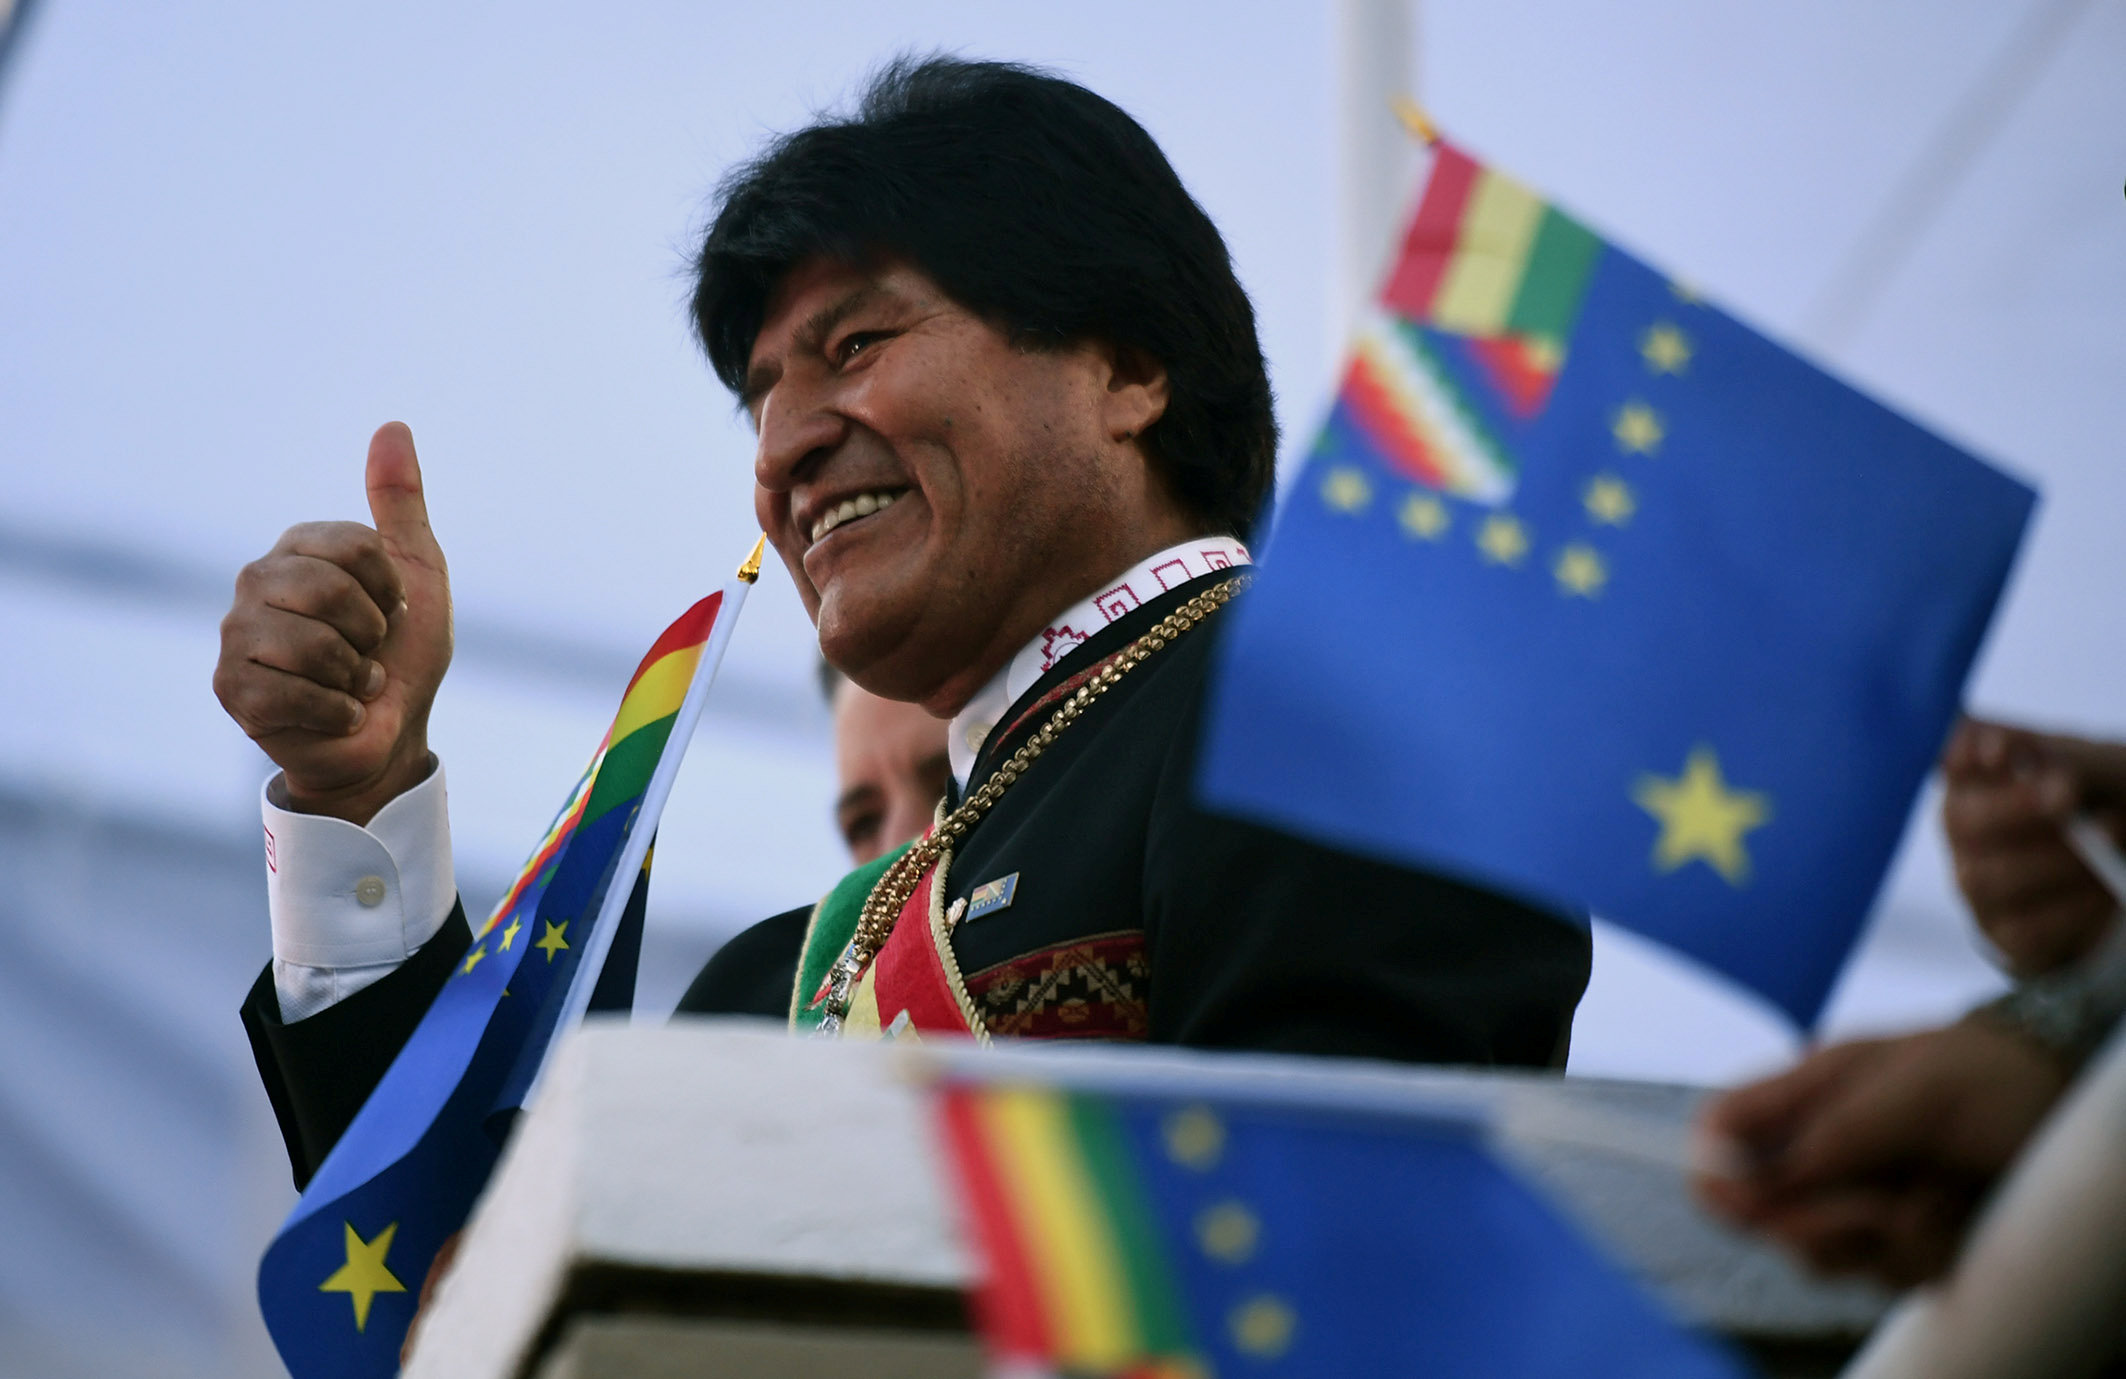 El Gobierno de Bolivia interpuso en 2015 una demanda marítima contra Chile ante la CIJ para reclamar su entrada al mar.